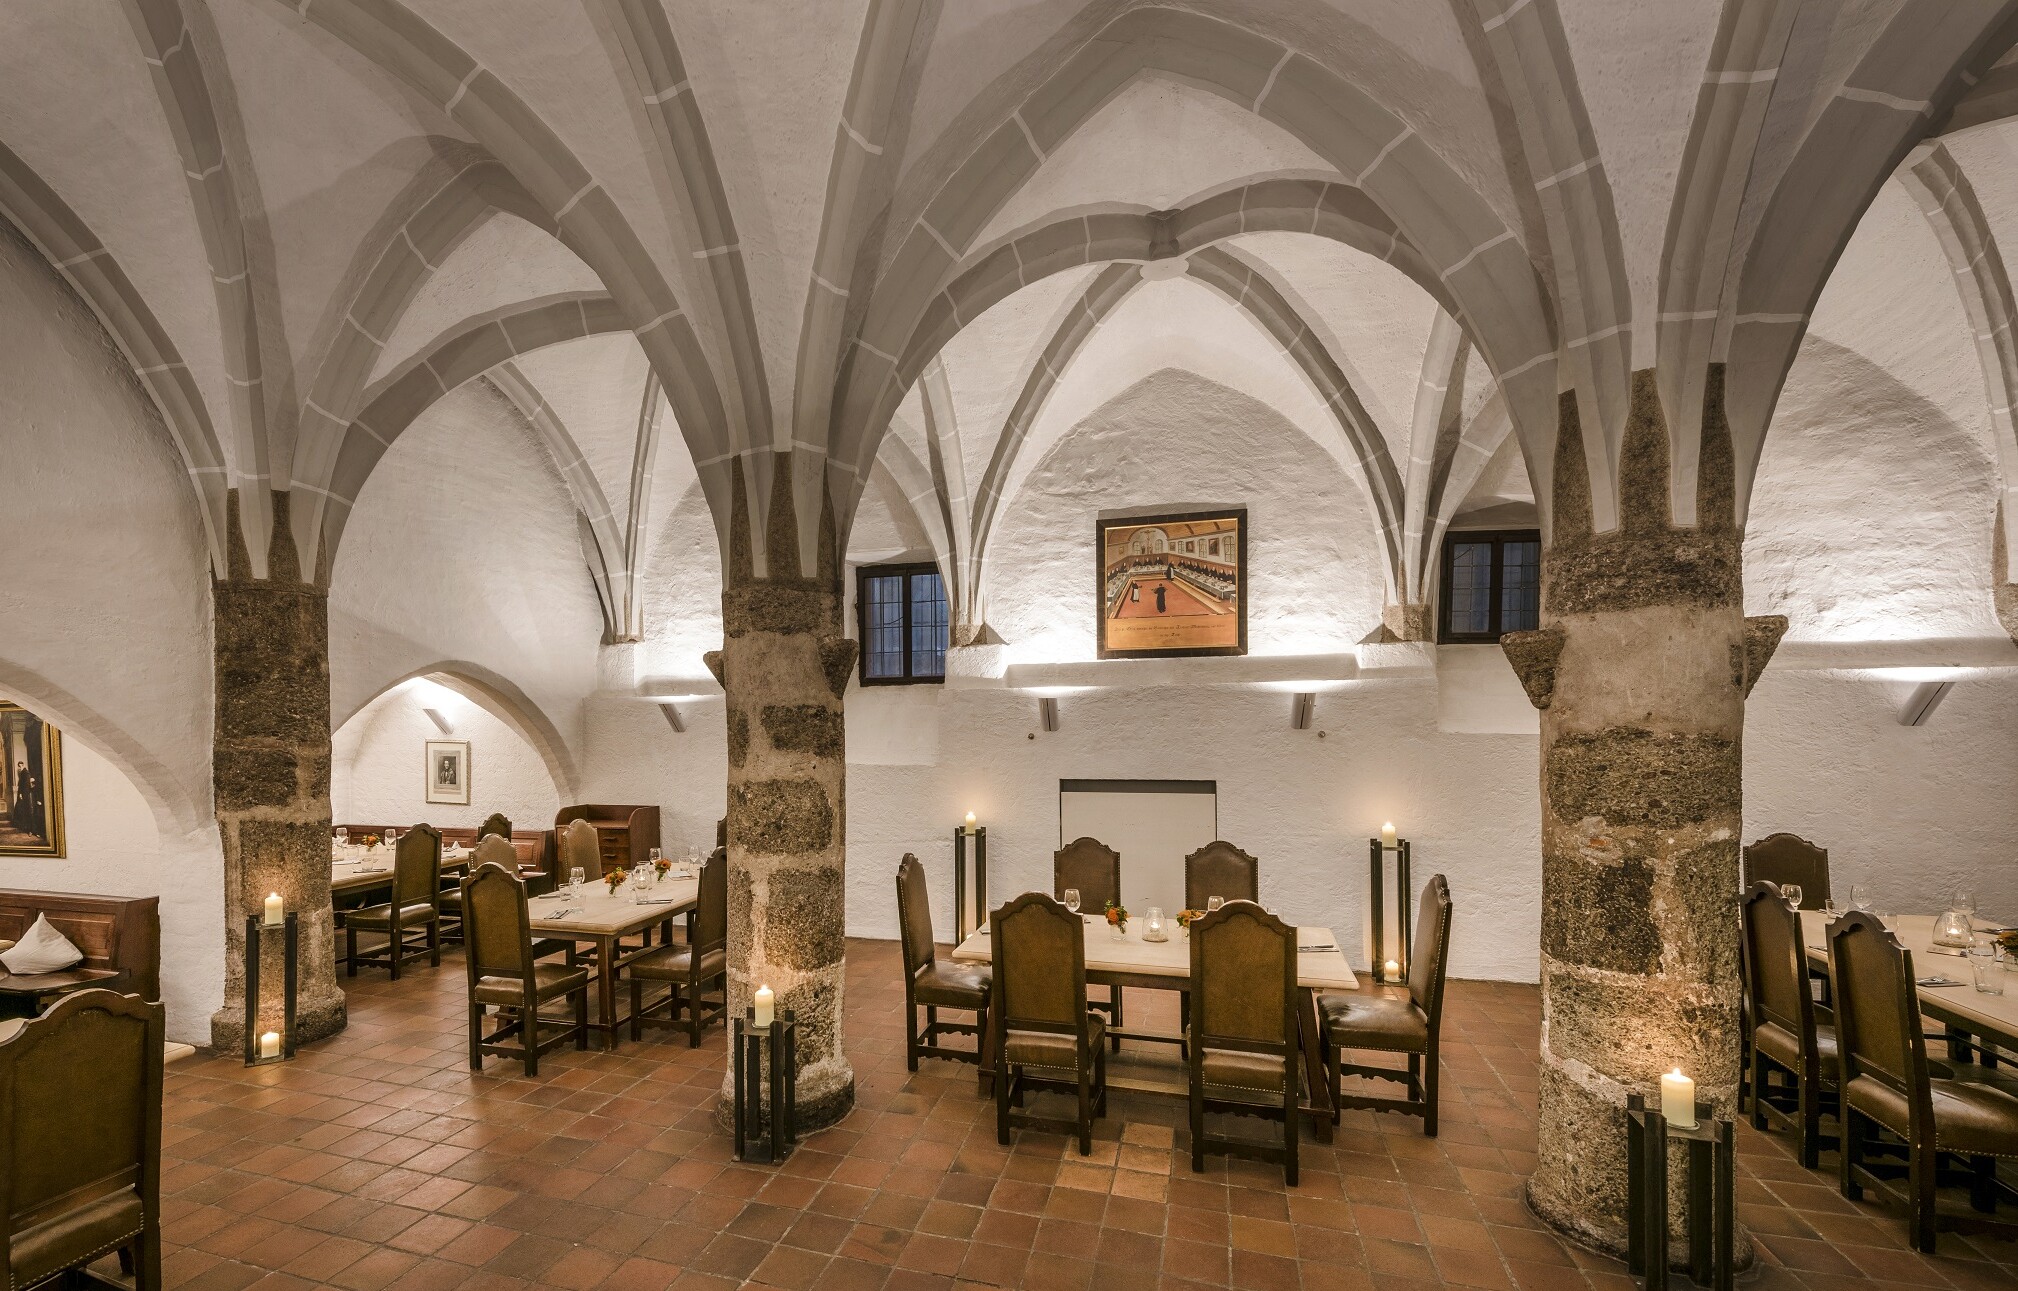 Ein Raum mit drei Steinsäulen in der Mitte, darüber ein gotisches Netzgewölbe, farblich hellgrau abgesetzt von den weißen Wänden; zwischen den Säulen Tische mit schweren Stühlen: Der Gotische Keller der Klostergaststätte Seeon.